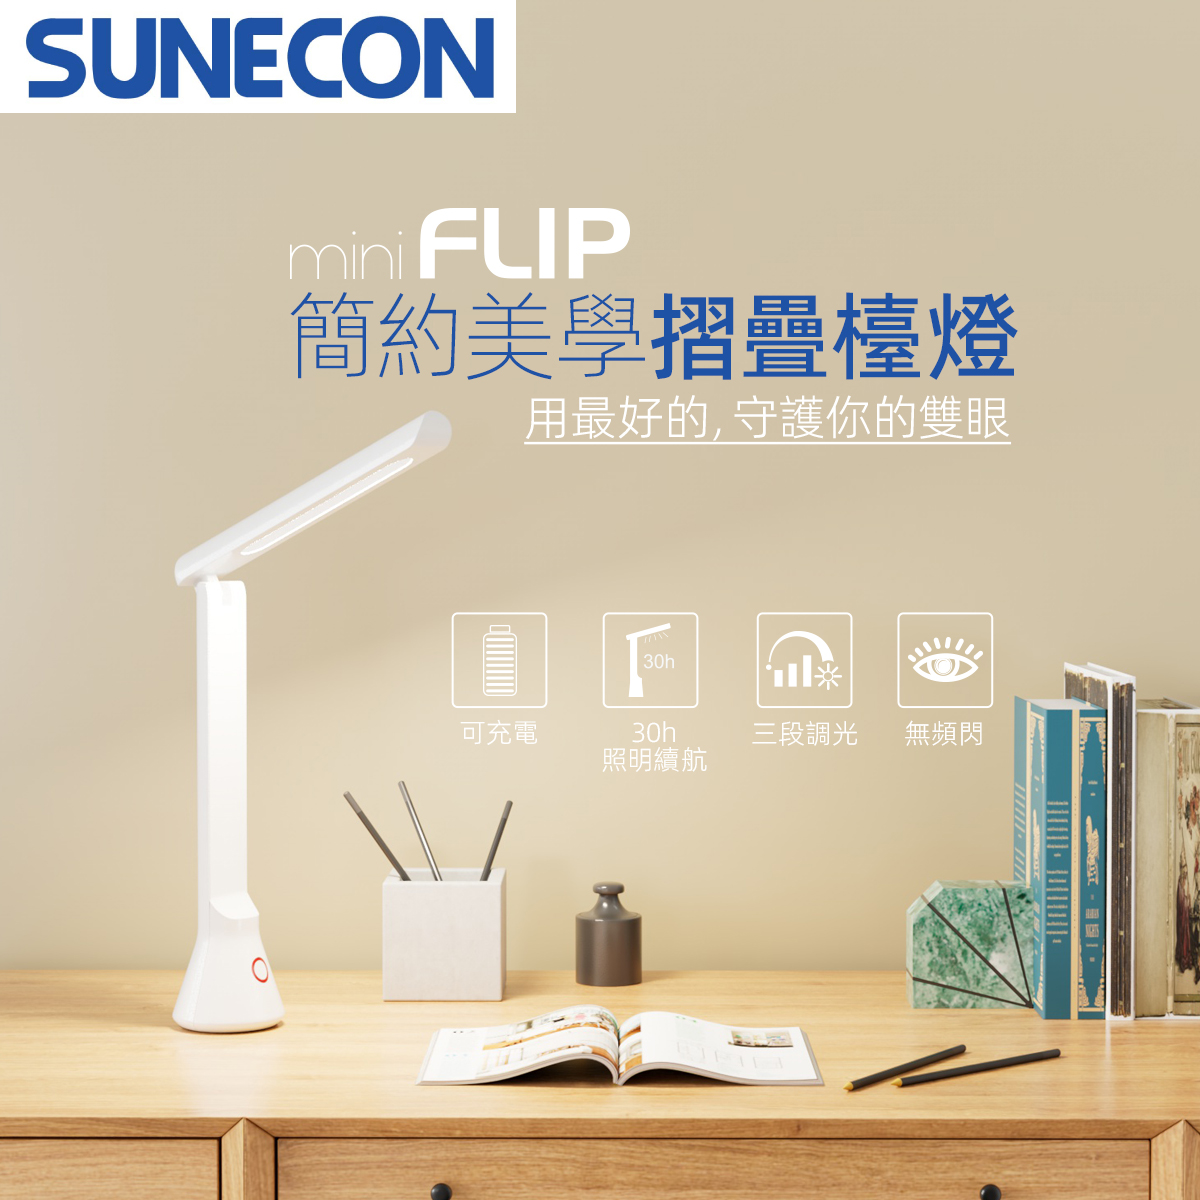 miniFLIP LED Desk Lamp (White) USB Rechargable Dimmable Daylight 6500K LED Table Lamp (SFTL-004W)